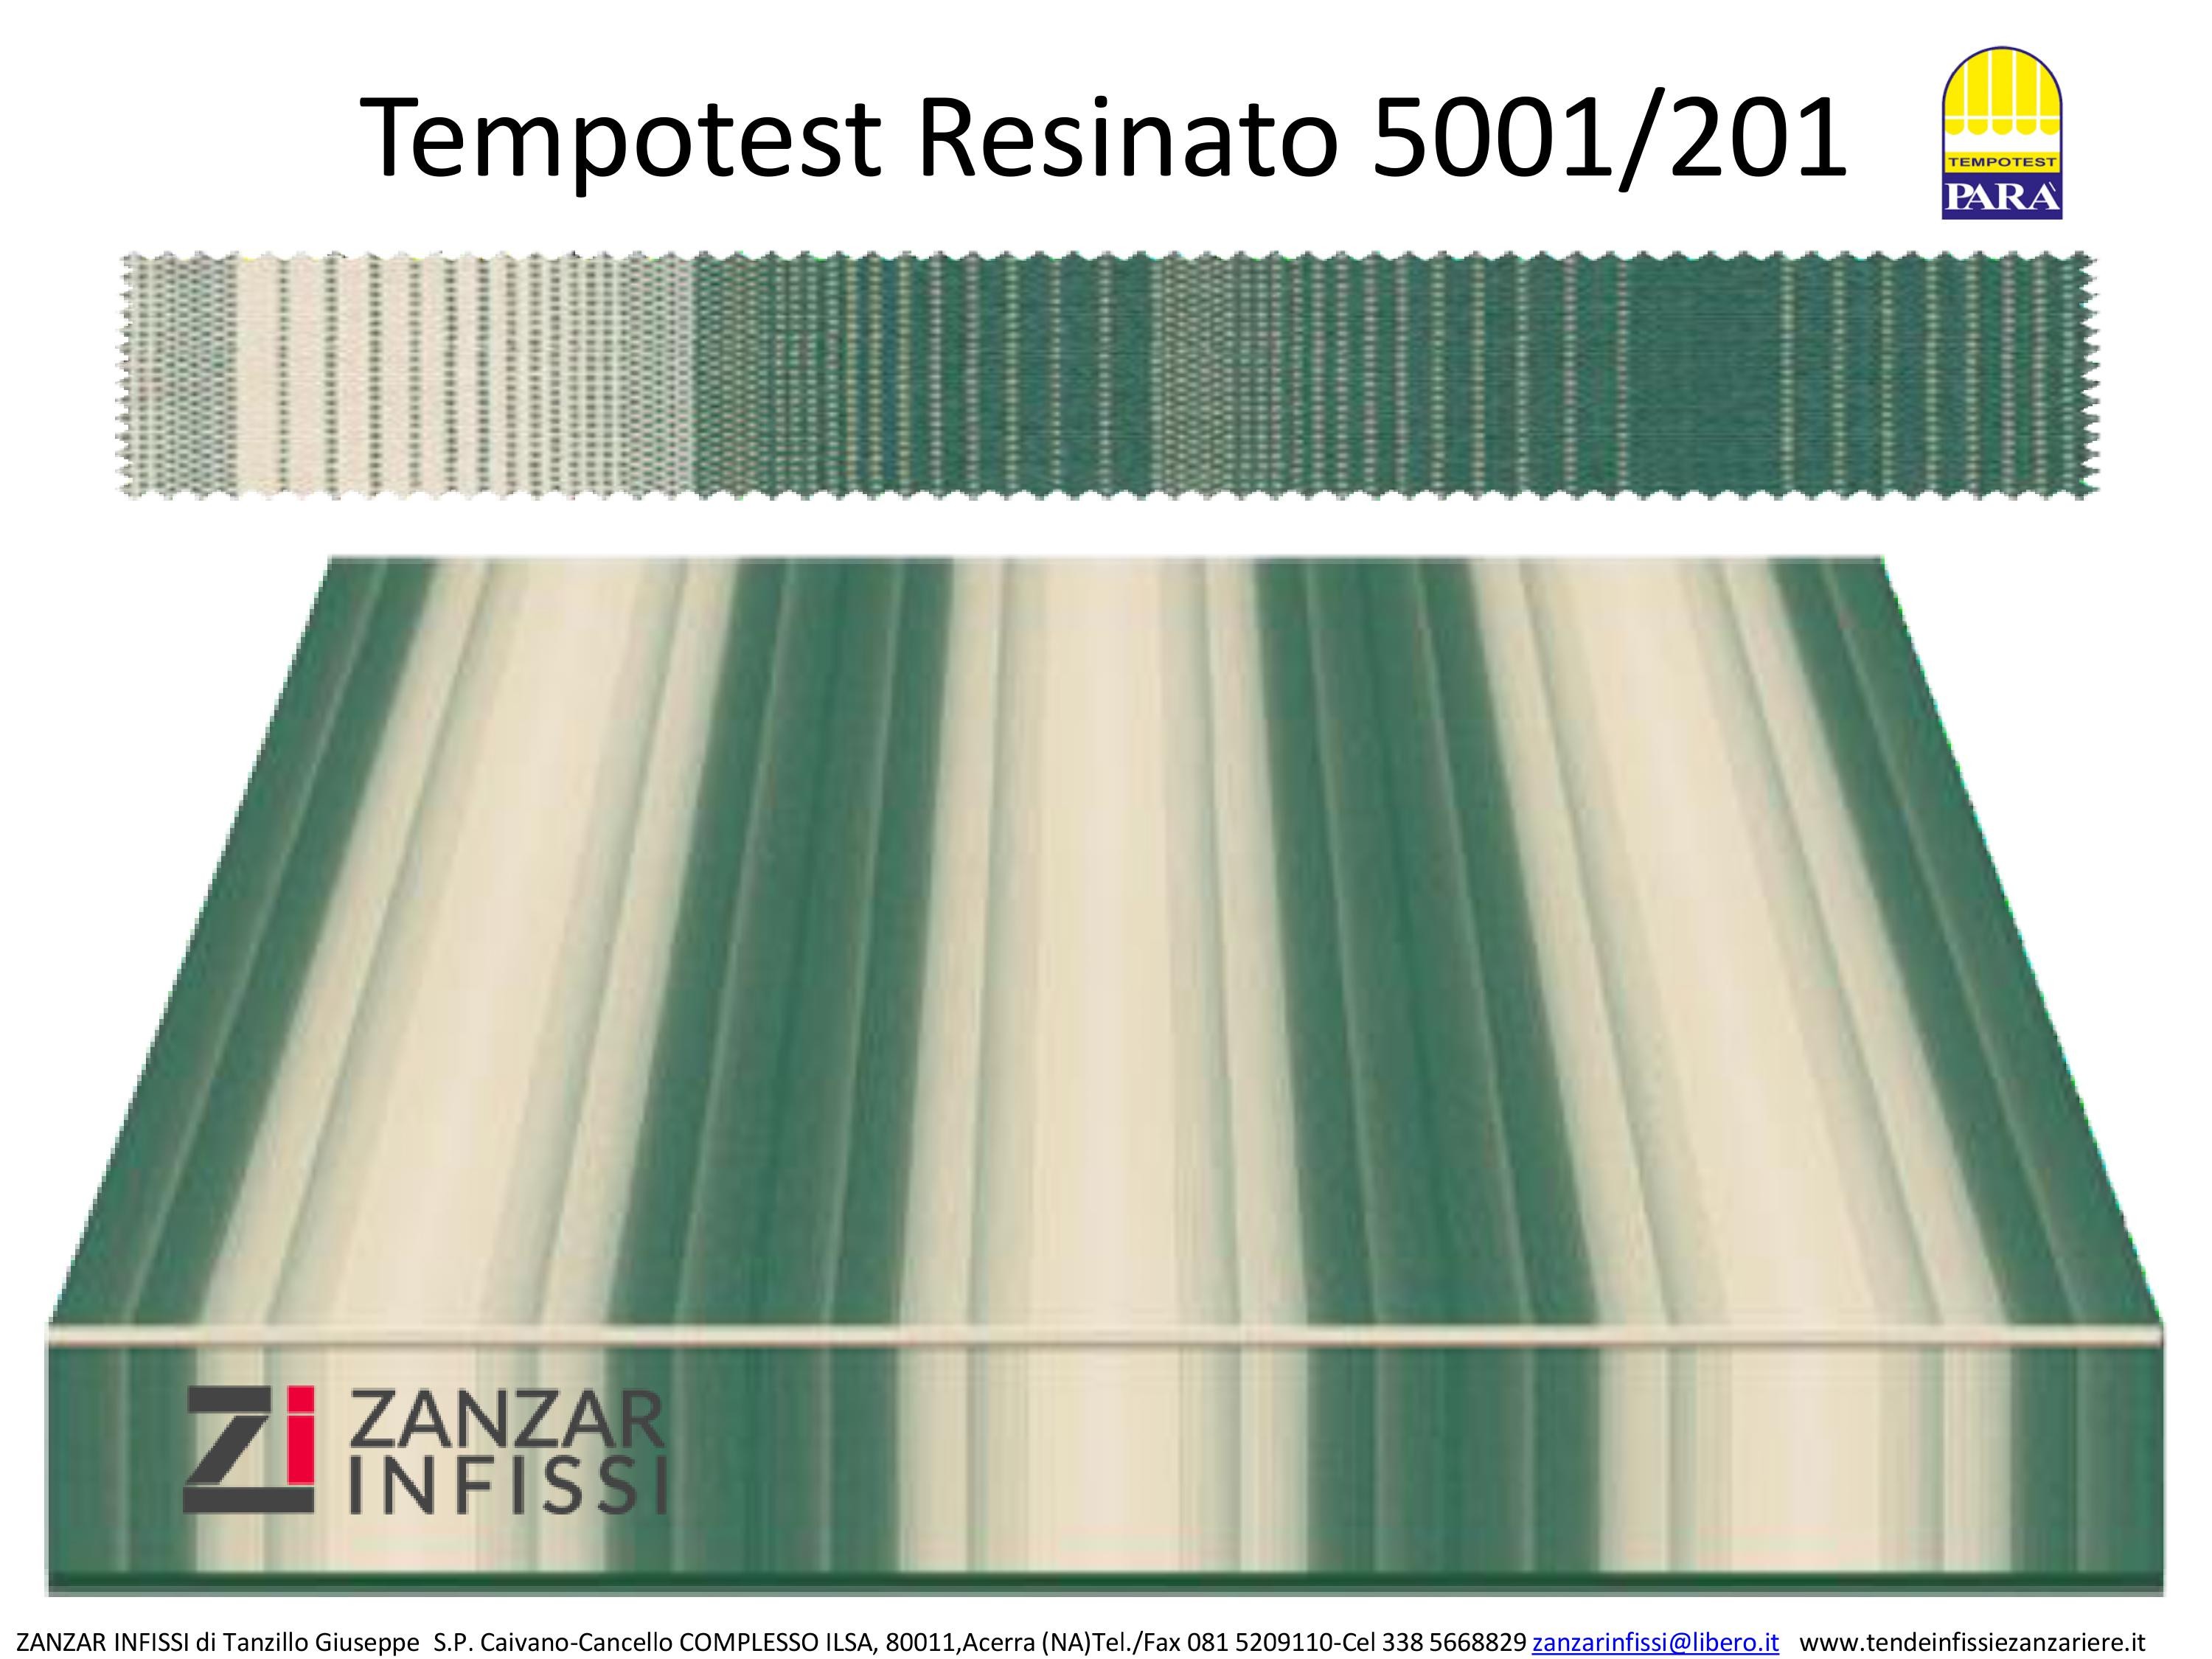 Tempotest resinato 5001/201